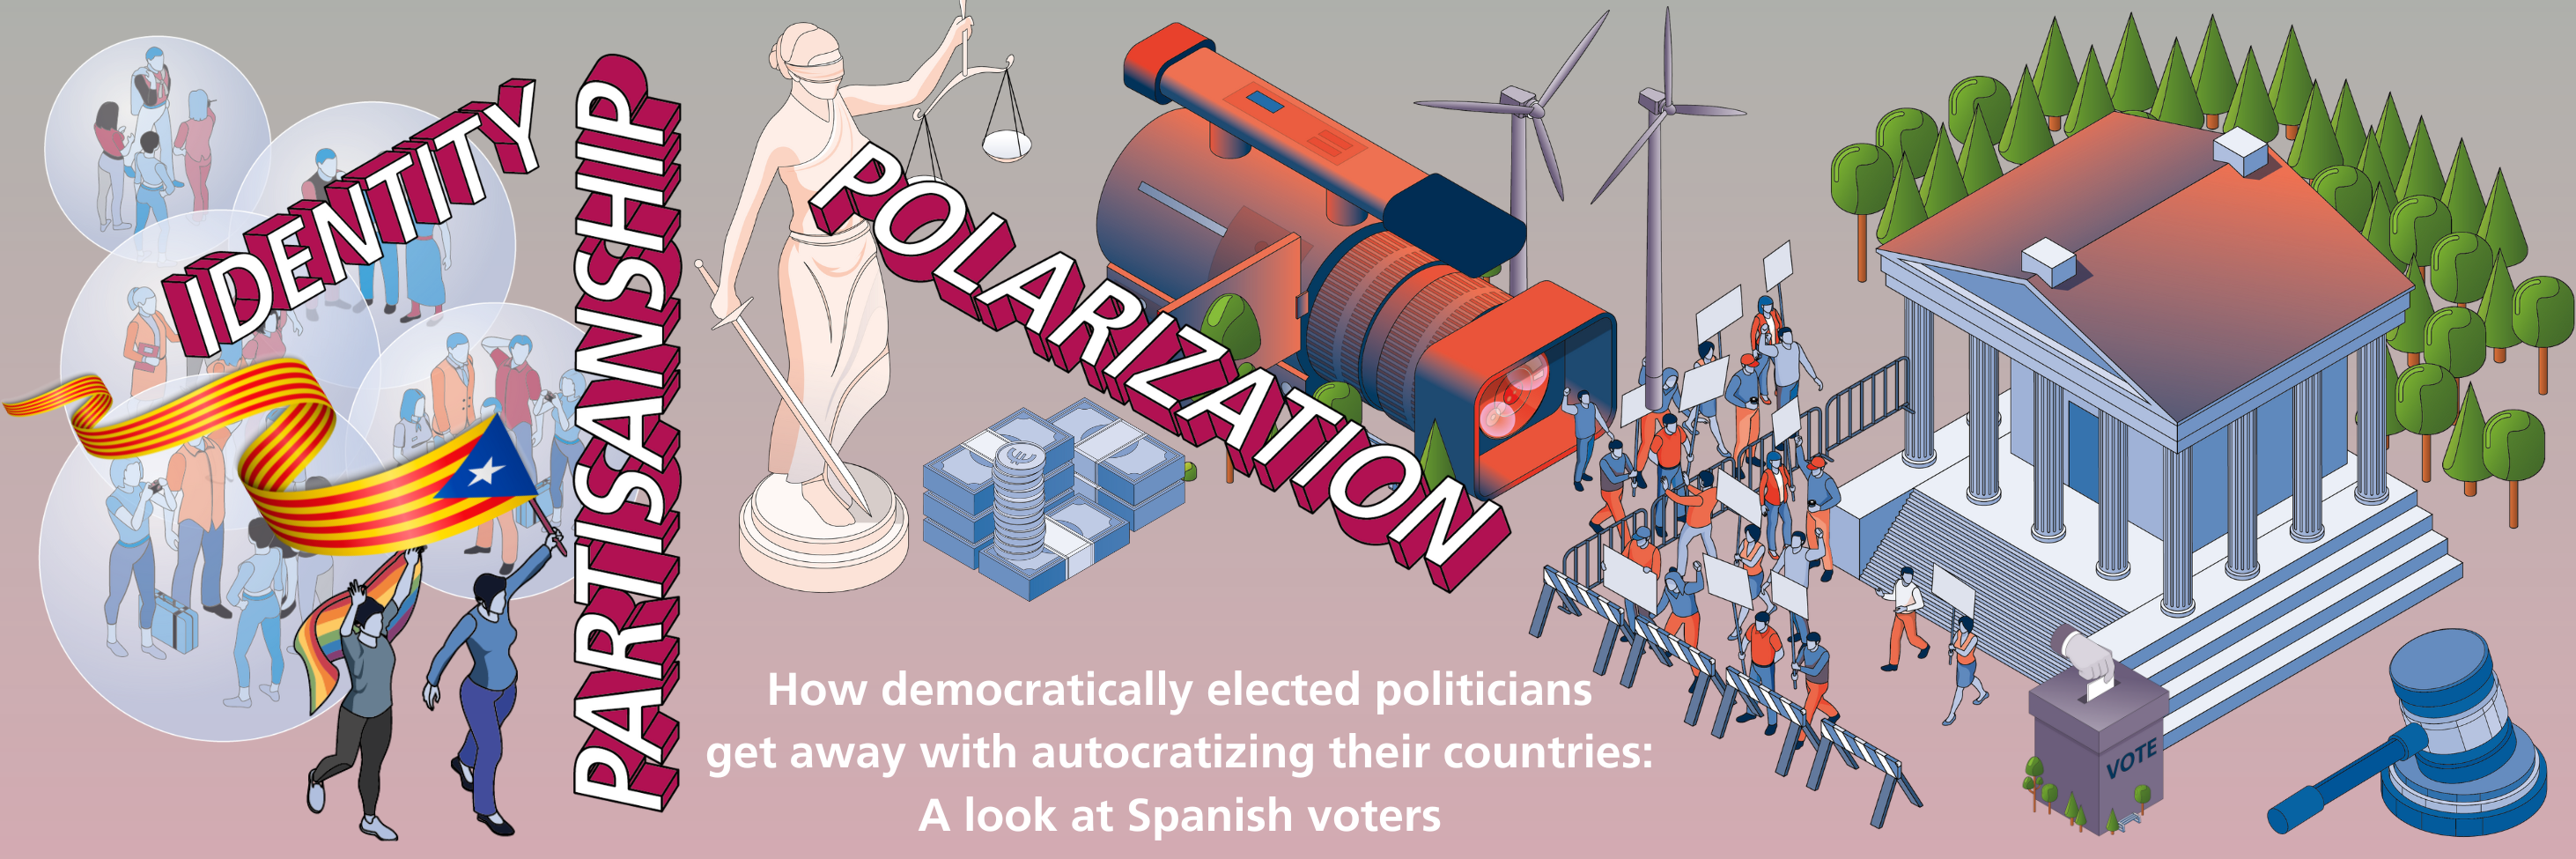 Imagen para los medios: Cómo los políticos democráticamente elegidos se salen con la suya autocratizando sus países: Un vistazo a los votantes españoles